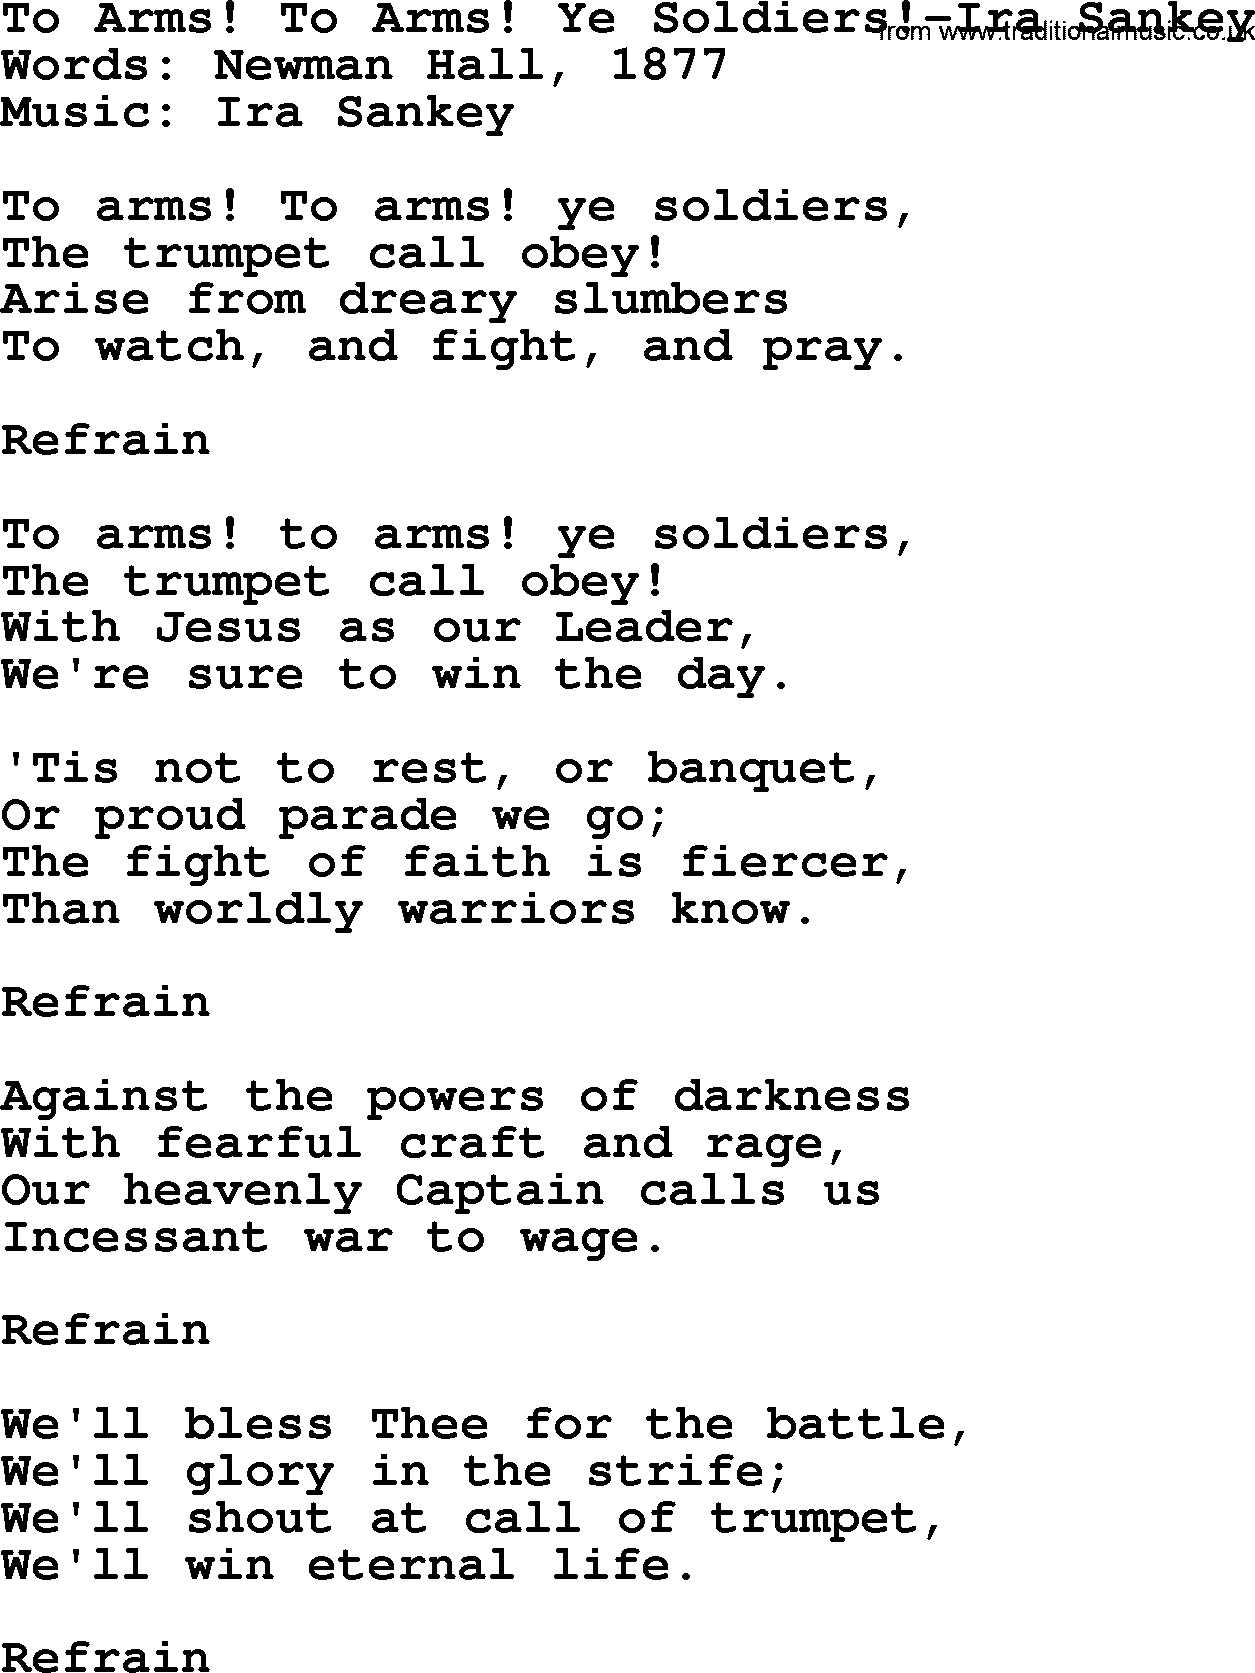 Ira Sankey hymn: To Arms! To Arms! Ye Soldiers!-Ira Sankey, lyrics